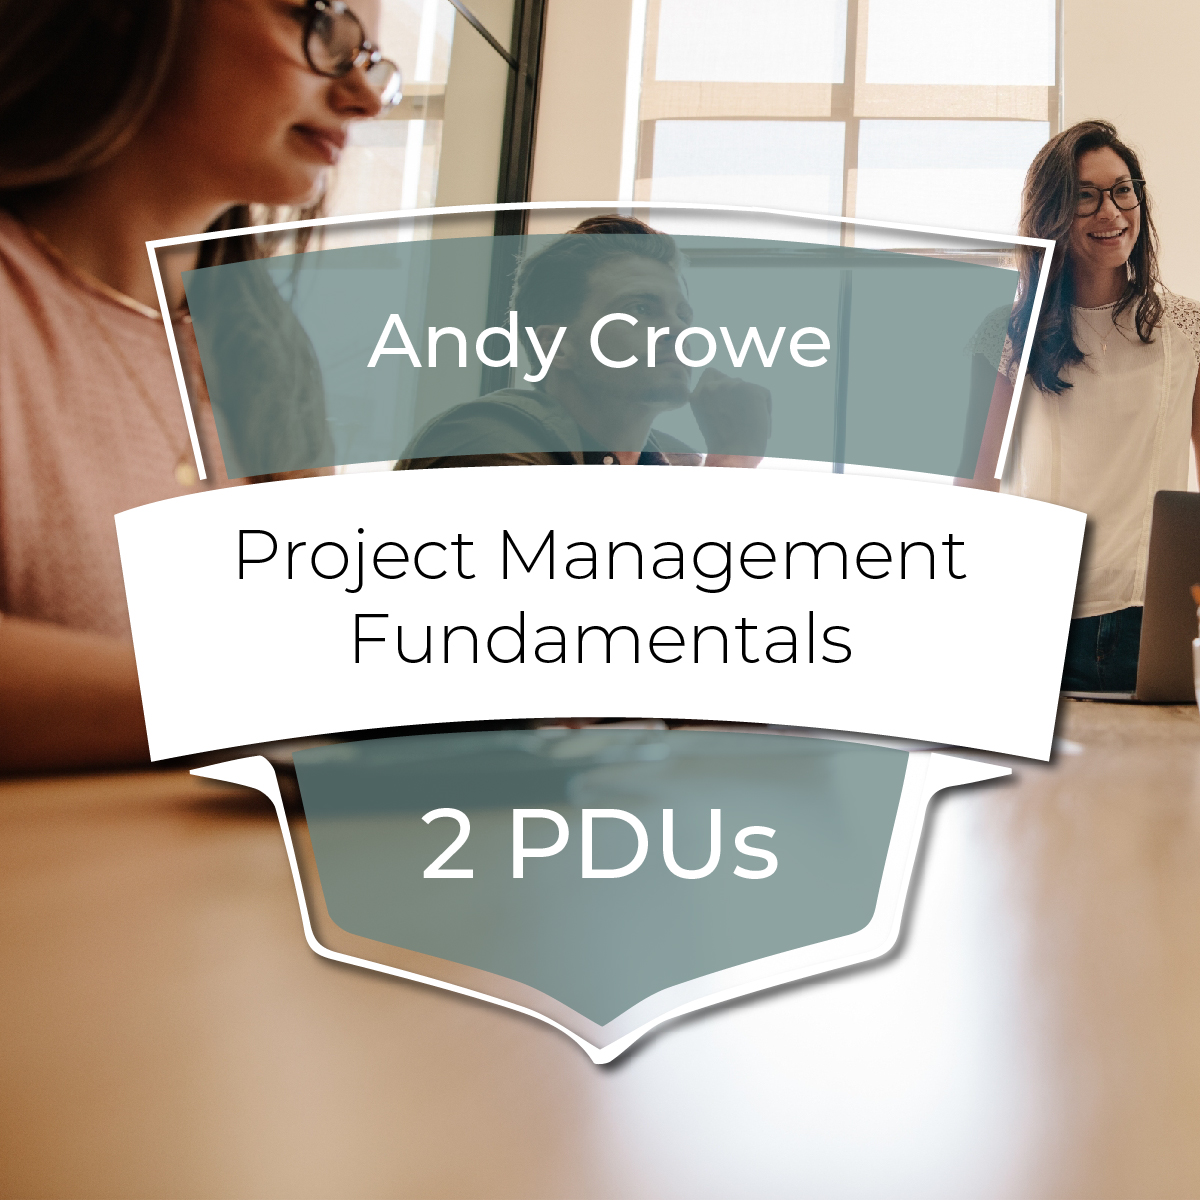 <p>Project Management Fundamentals</p>
